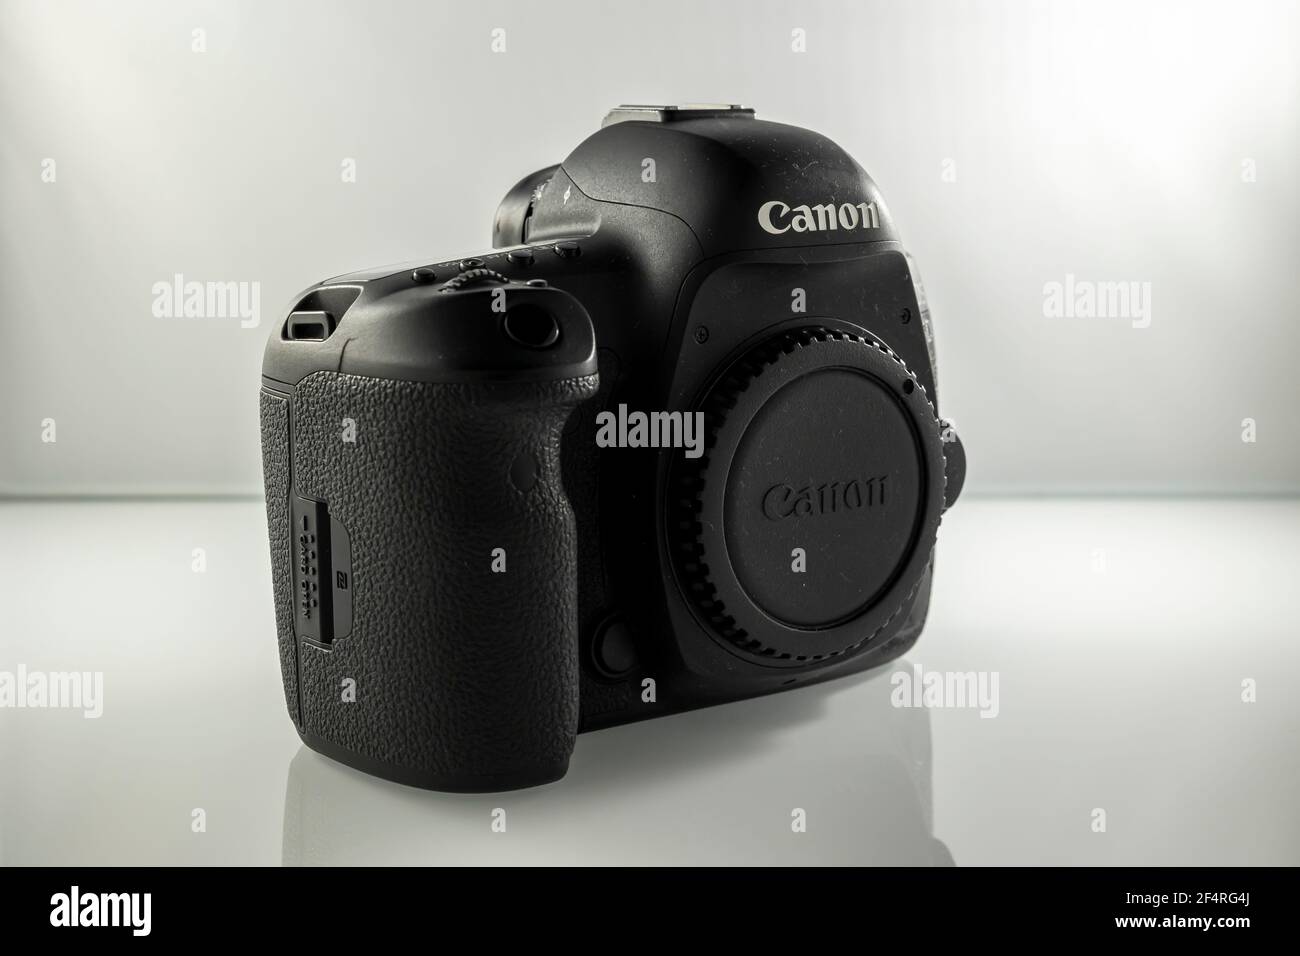 Frankfurt am Main - 21st. März 2021: Ein deutscher Fotograf fotografiert die Canon EOS 5D Mark IV Kamera von allen Seiten mit Knöpfen. Stockfoto